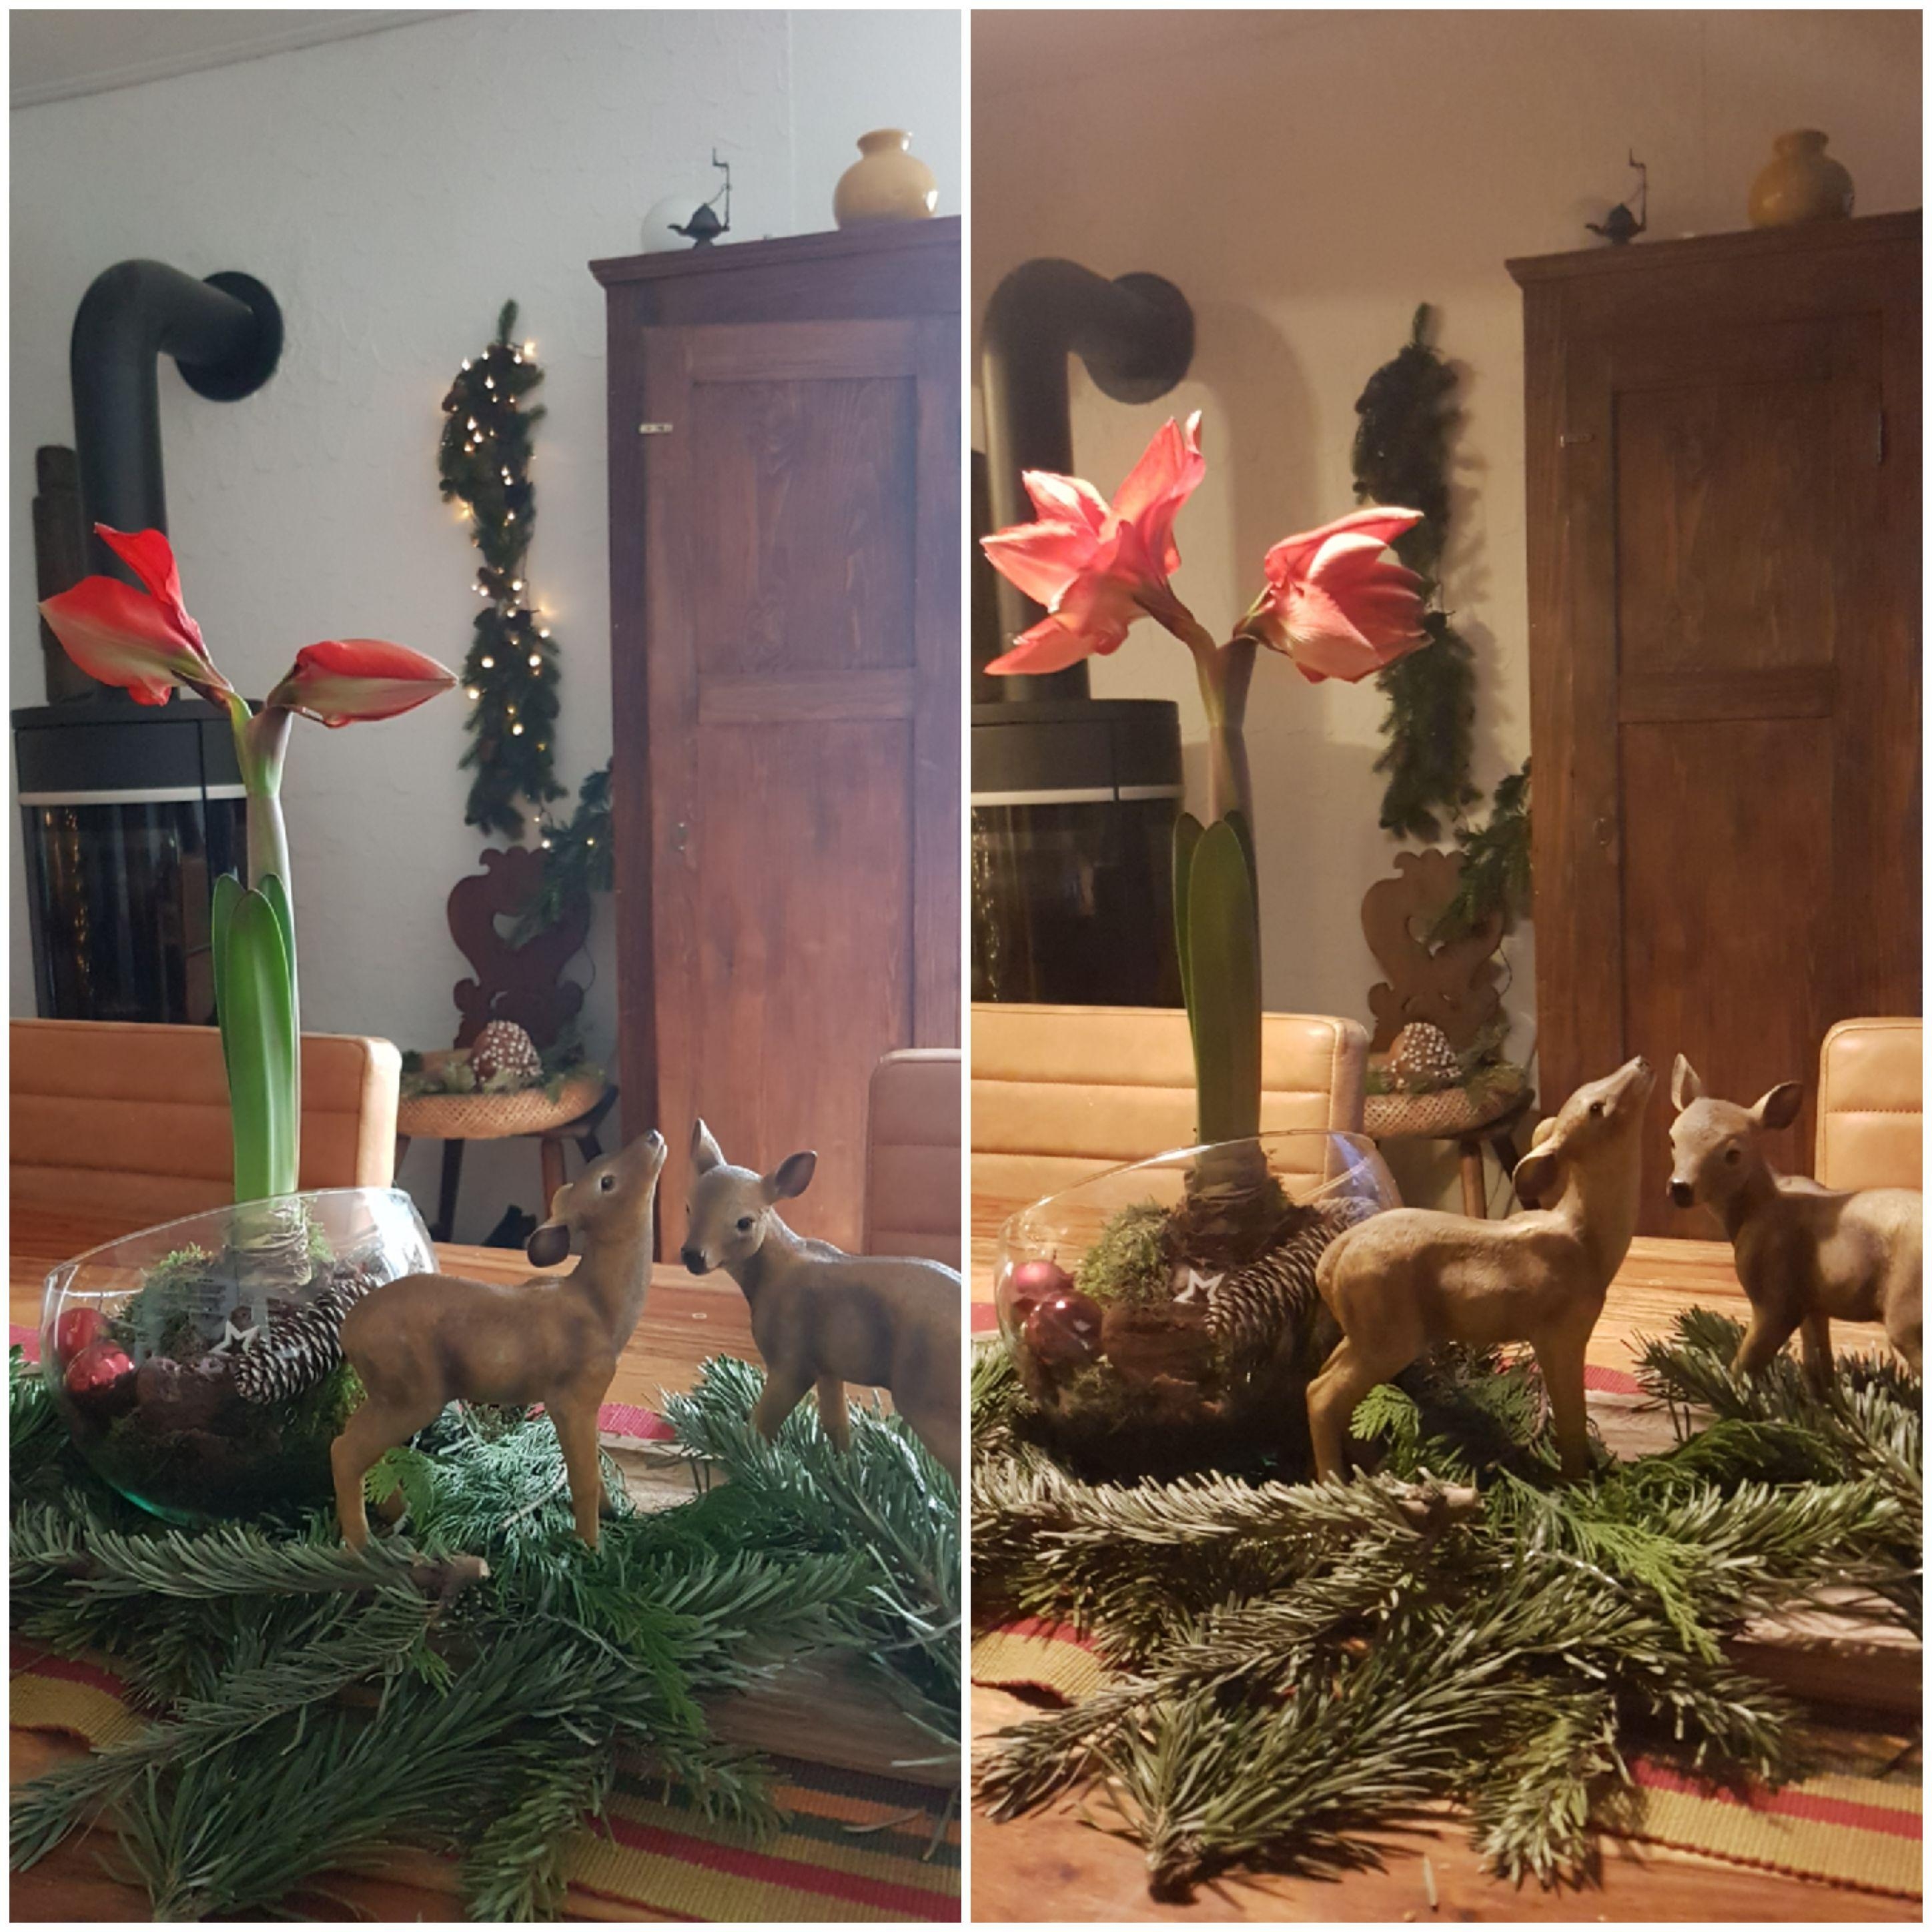 Heute ist die Amaryllis aufgegangen...

#Amaryllis #Advent #Weihnachten #Weihnachtsdeko #Reh